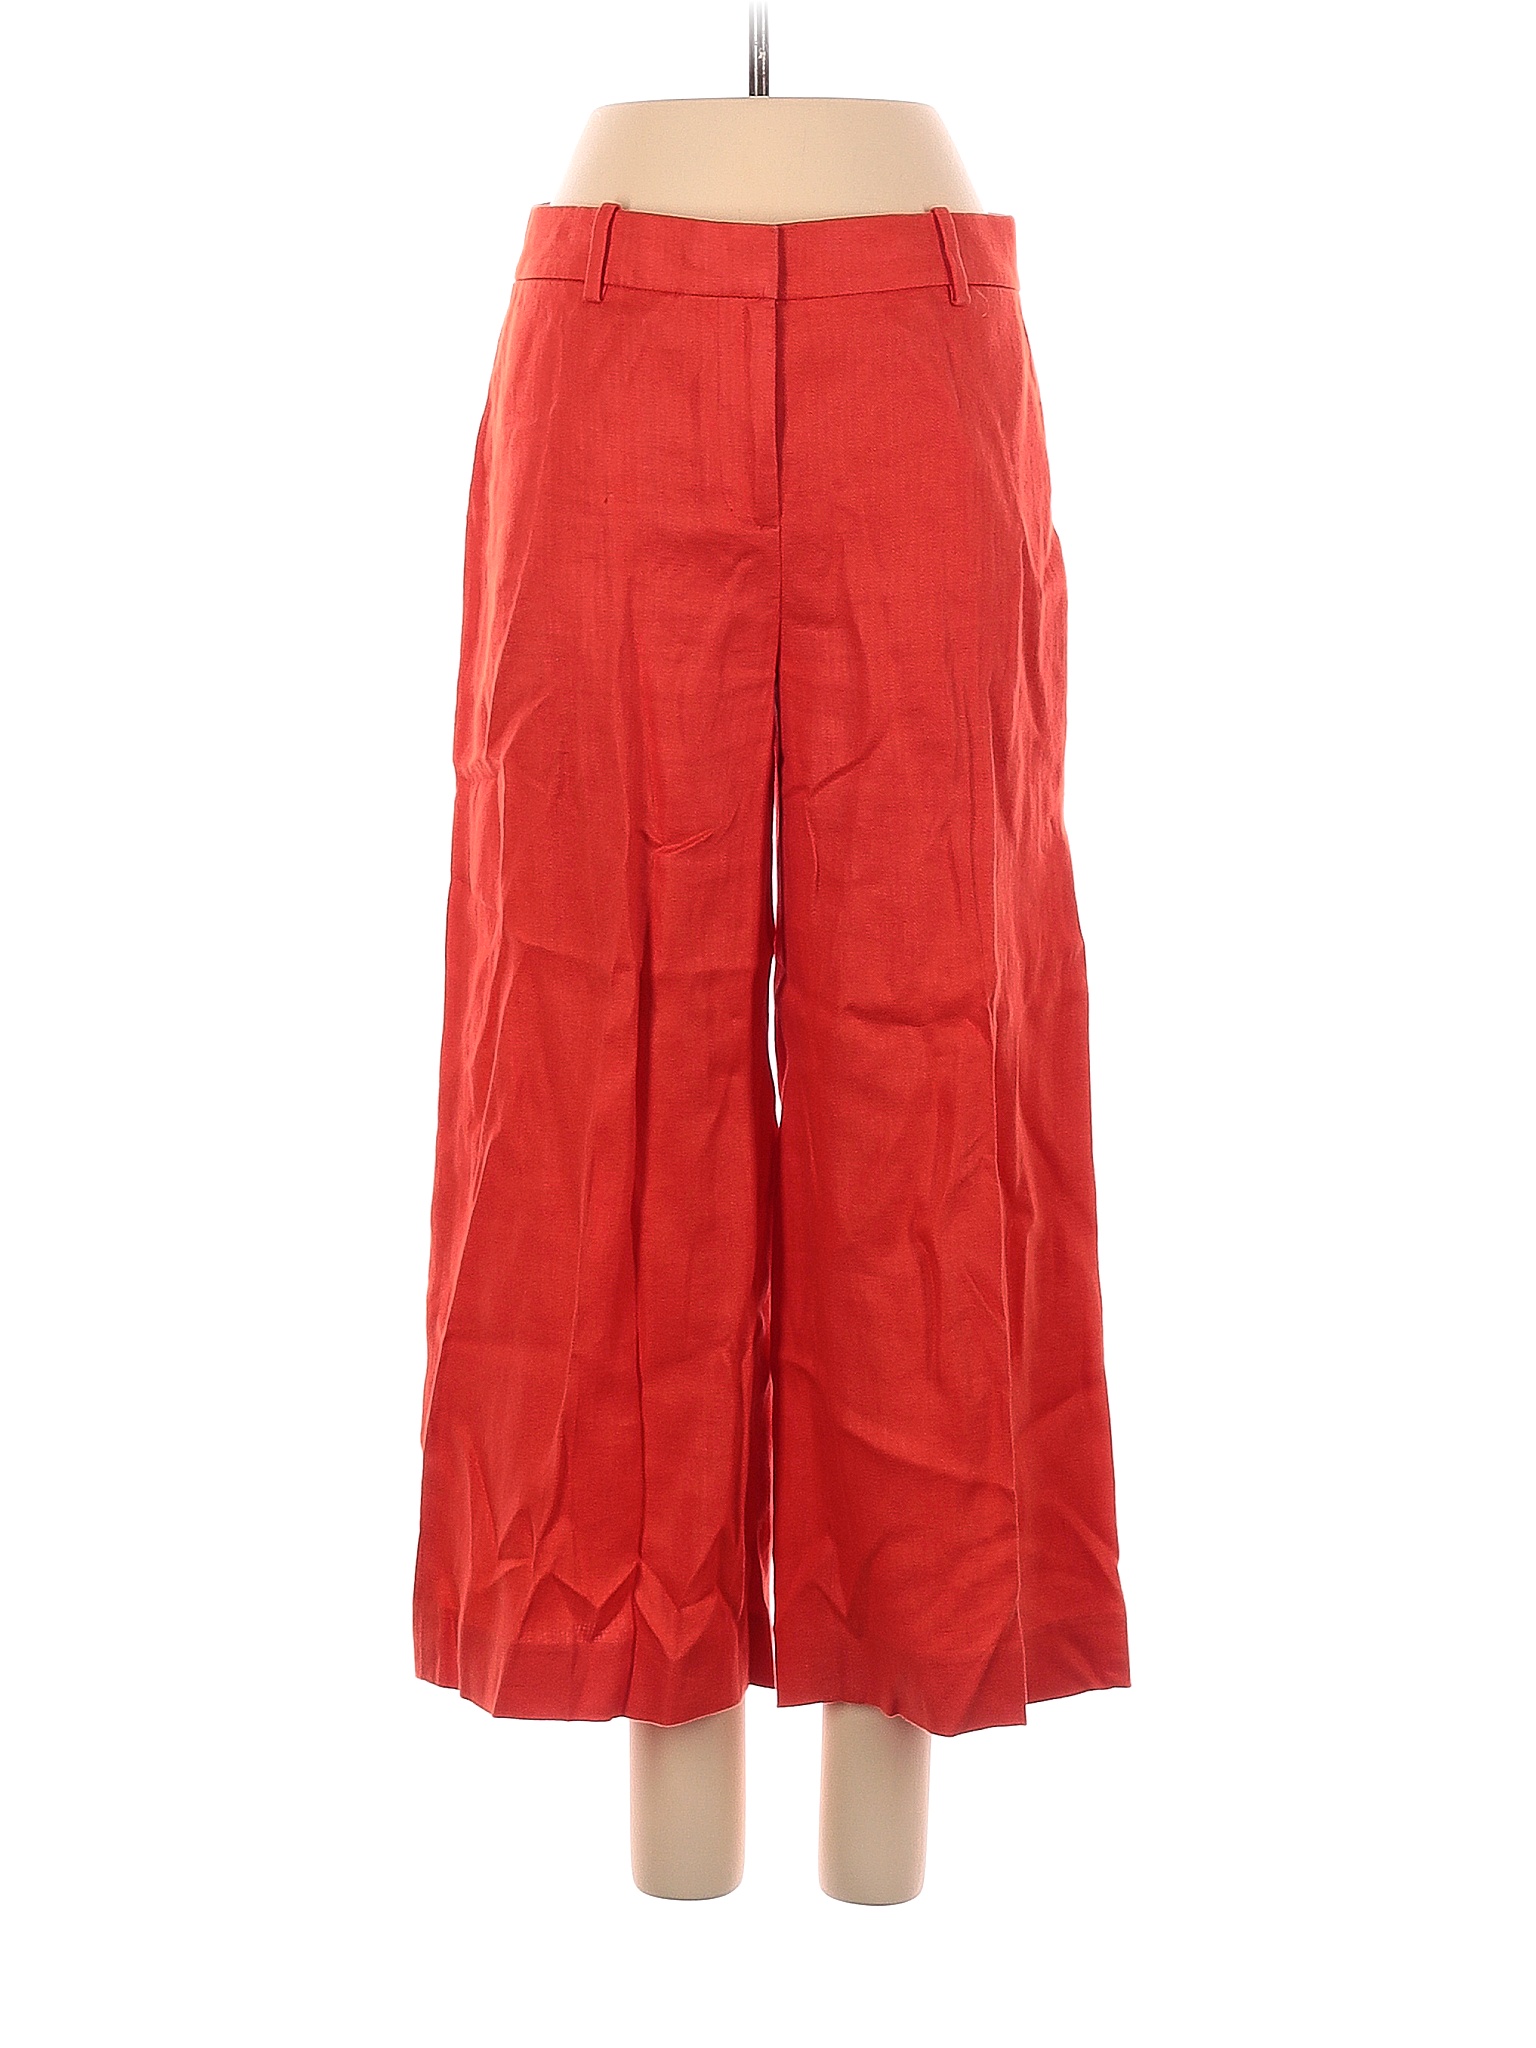 J.Crew 100% Linen Solid Colored Orange Linen Pants Size 2 - 77% off ...